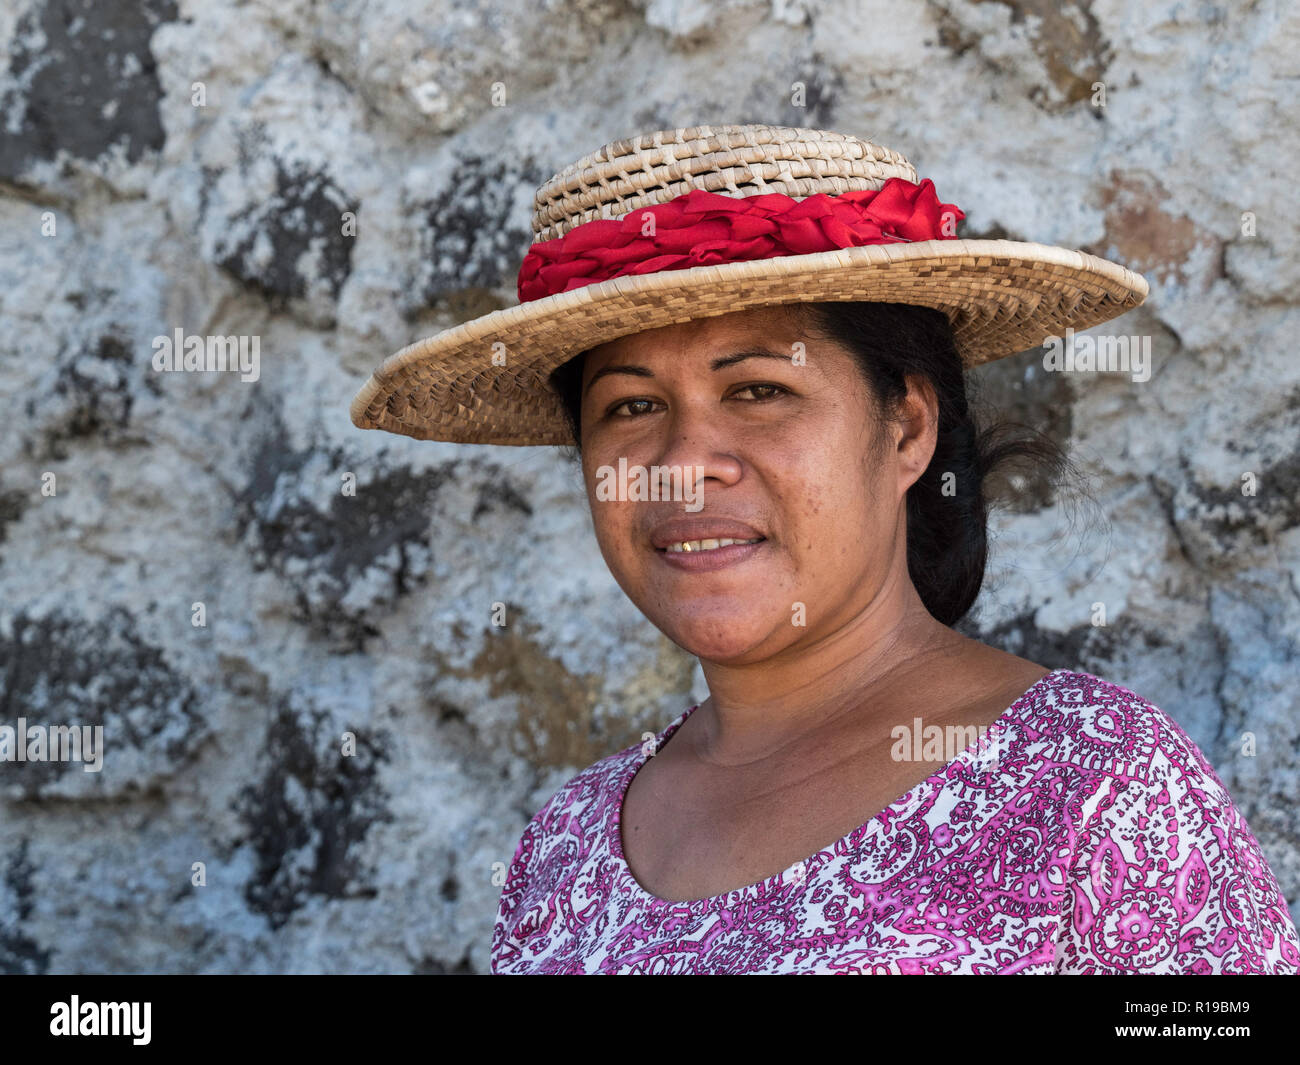 Lokale Frau auf der Insel Savai'i, die größte Insel im Samoa. Stockfoto